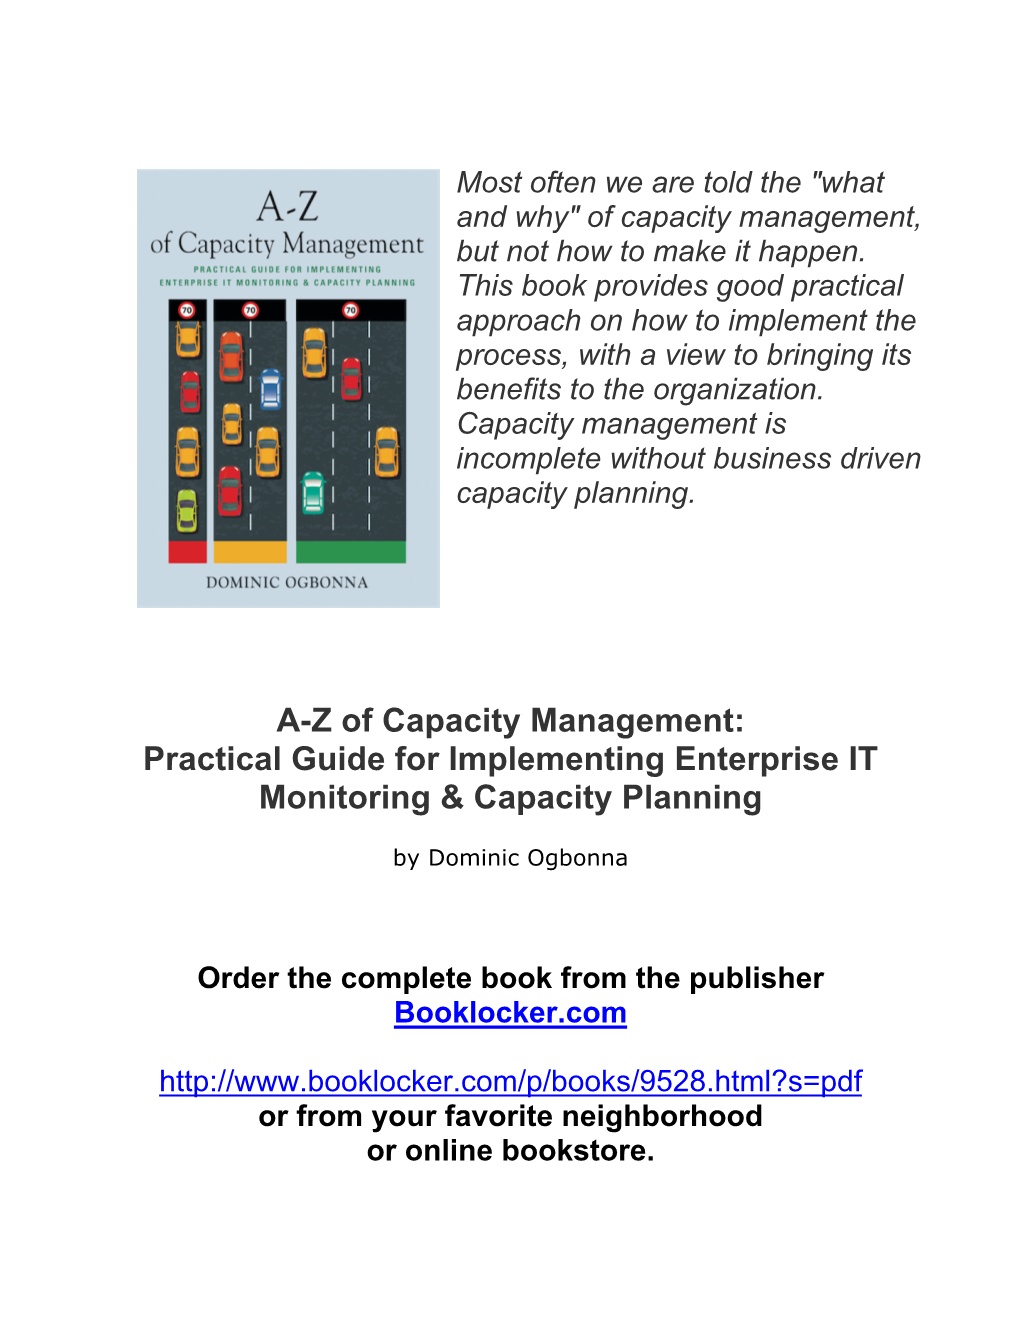 AZ of Capacity Management